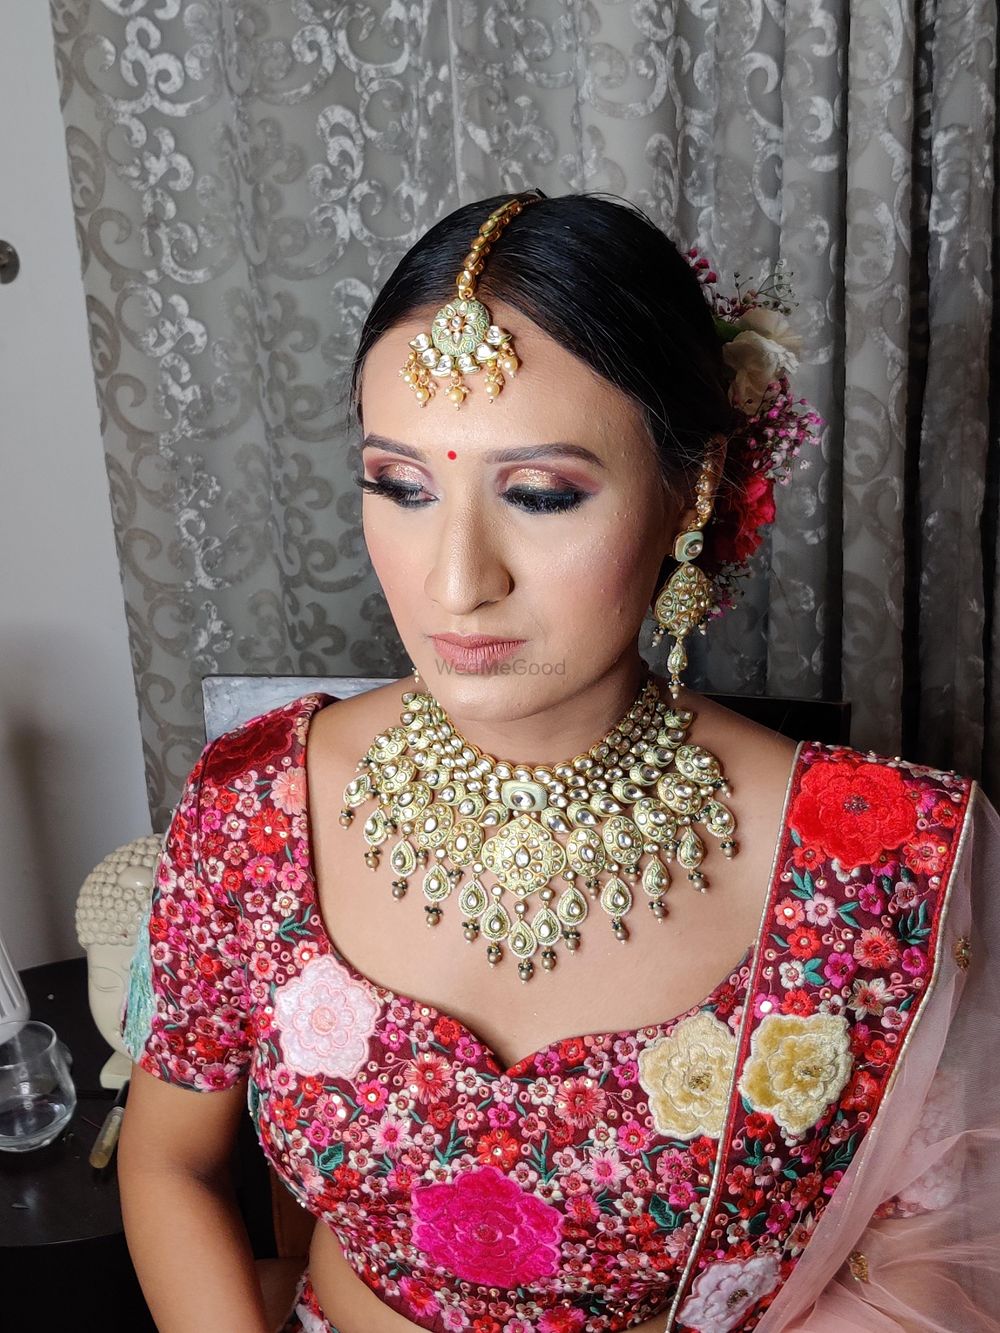 Photo From Brides - By Makeup Artist Garima Jham